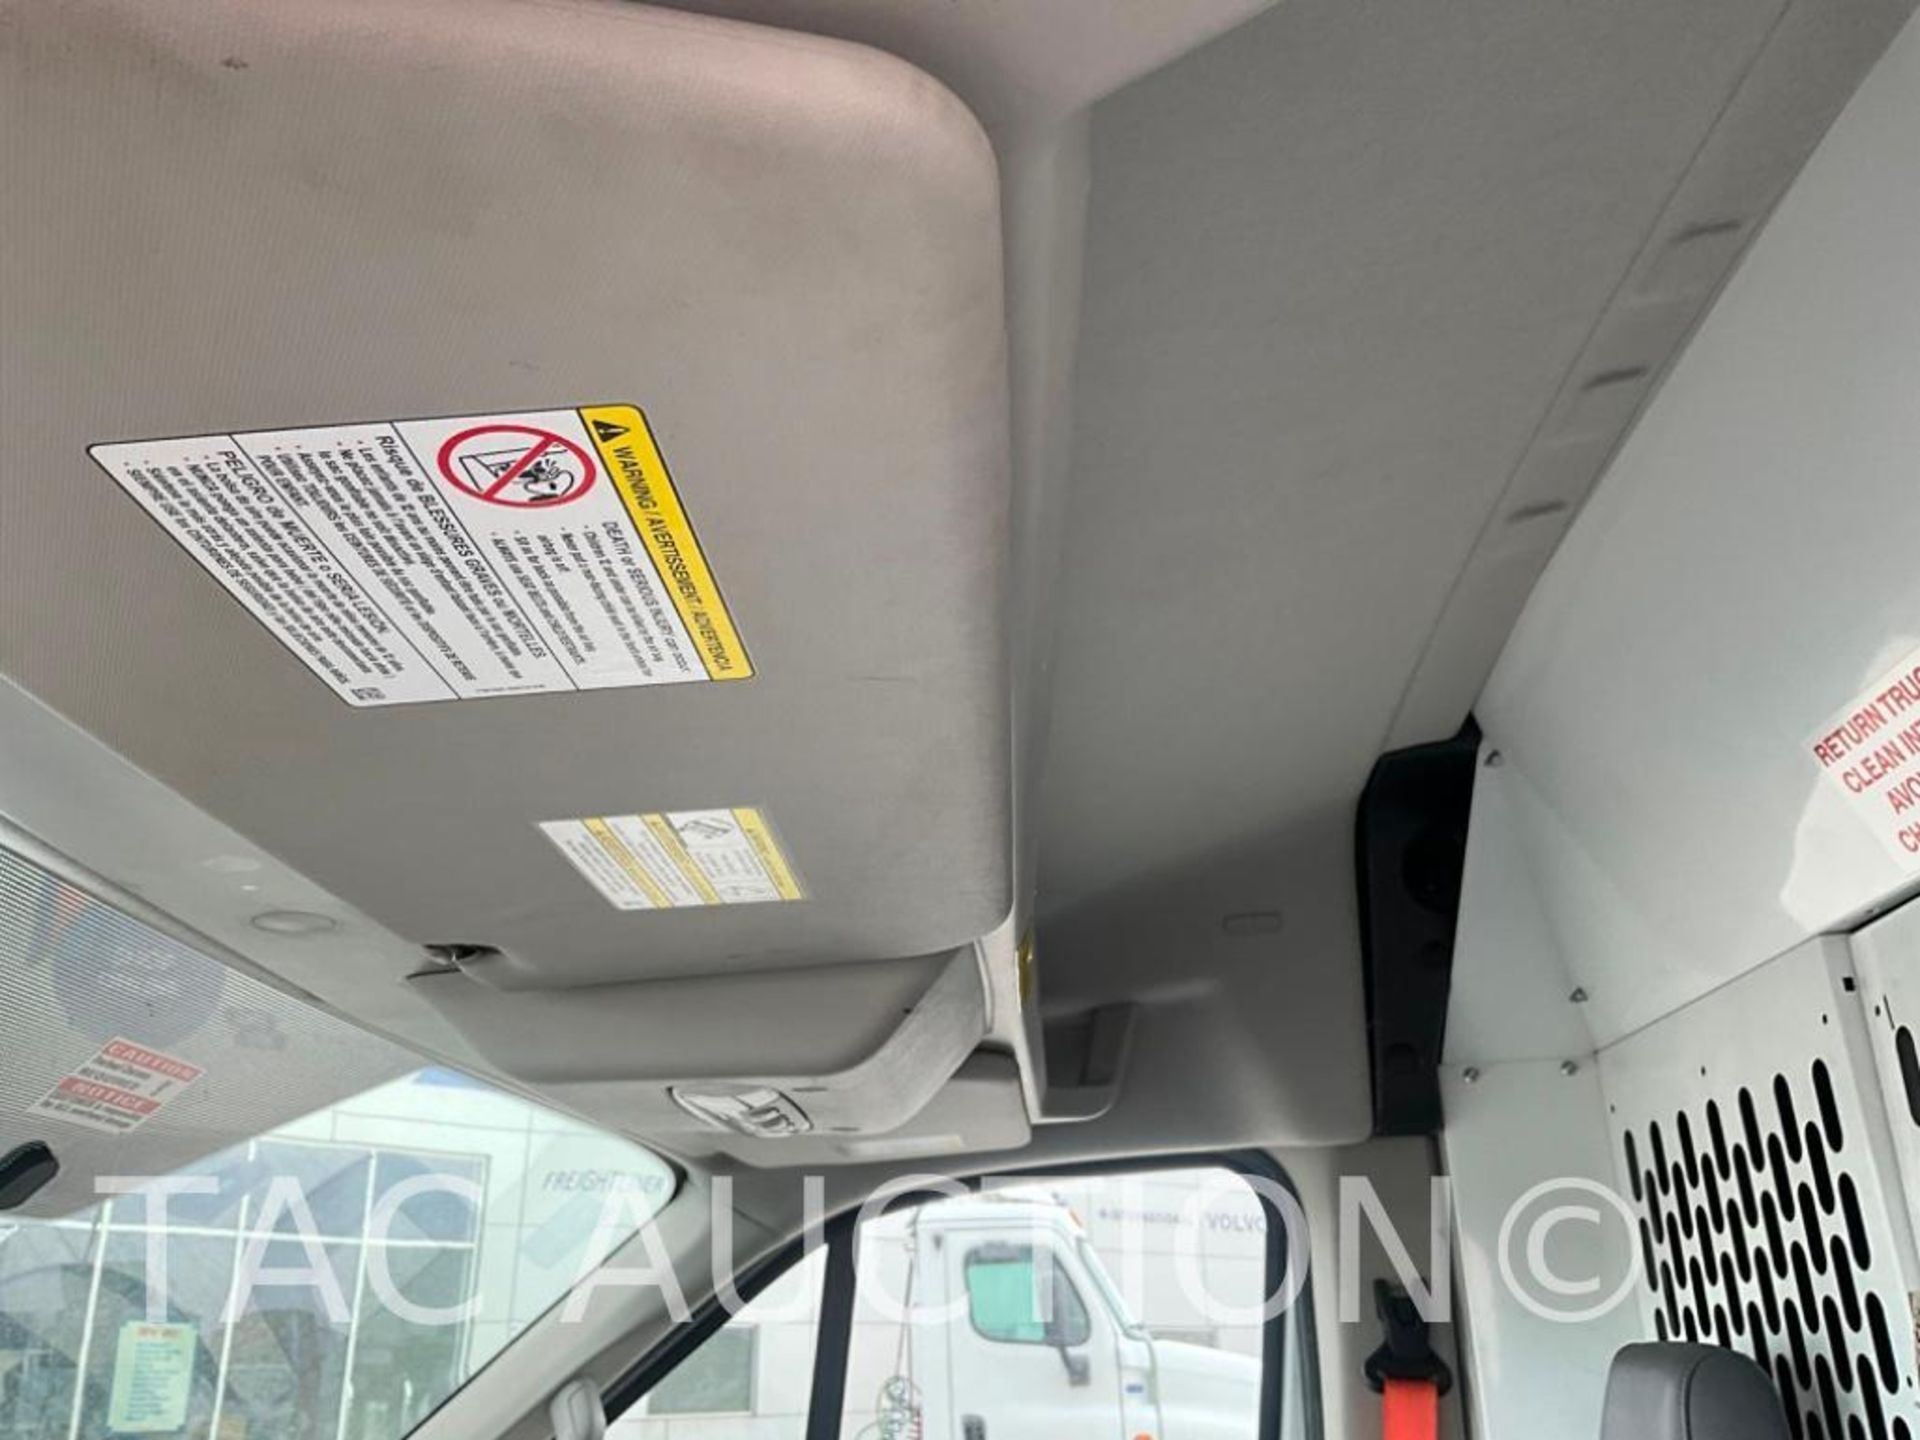 2019 Ford Transit 150 Cargo Van - Image 15 of 56